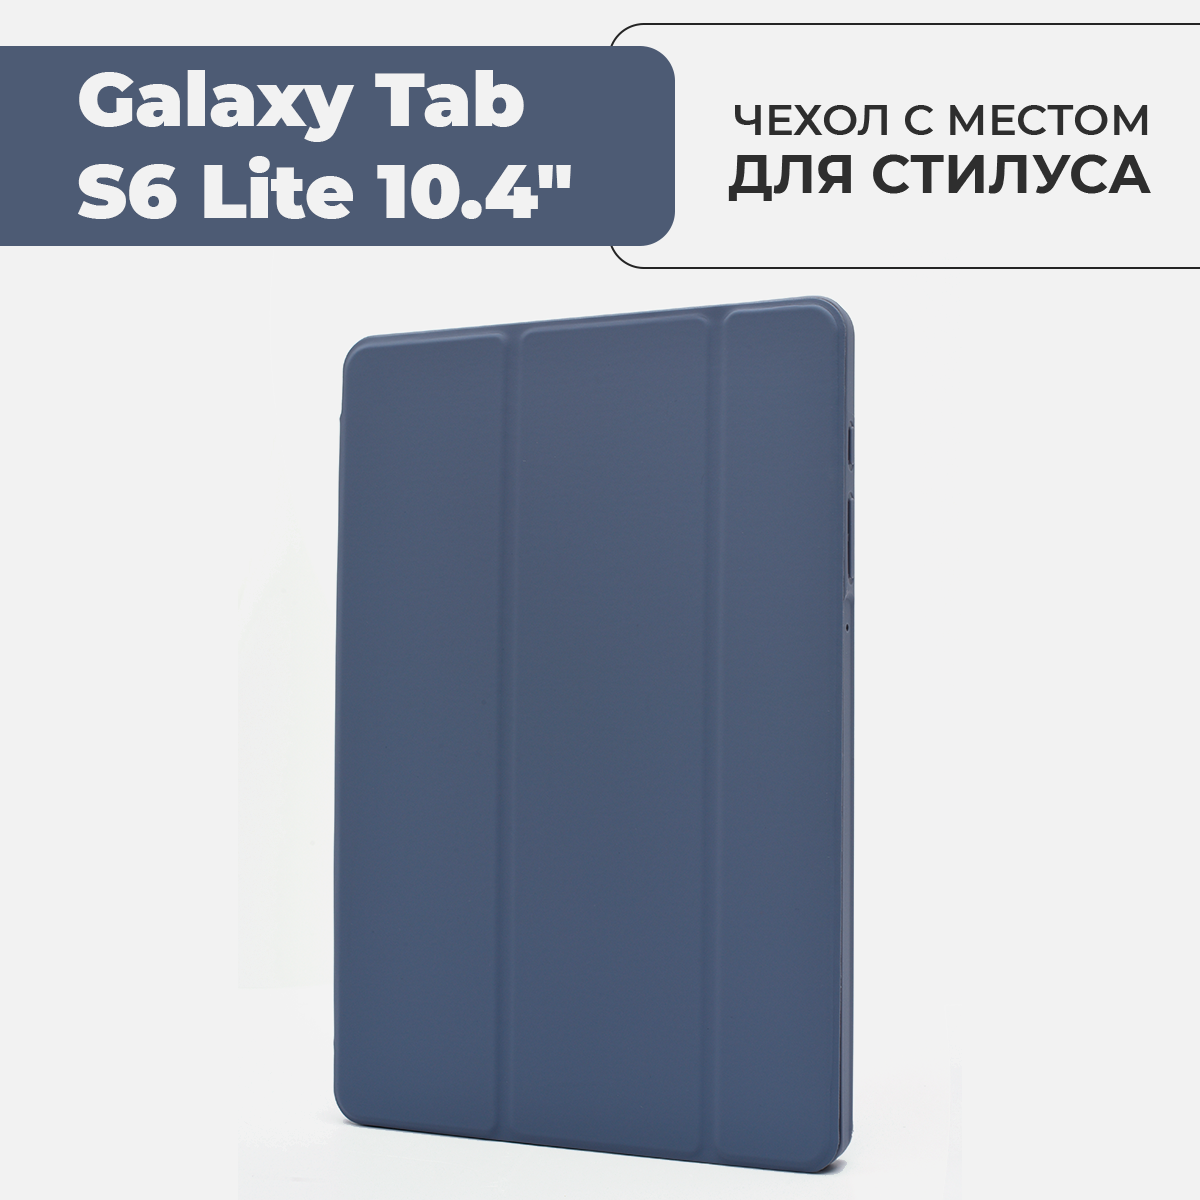 Чехол для планшета Samsung Galaxy Tab S6 Lite 10.4" с местом для стилуса, лавандовый